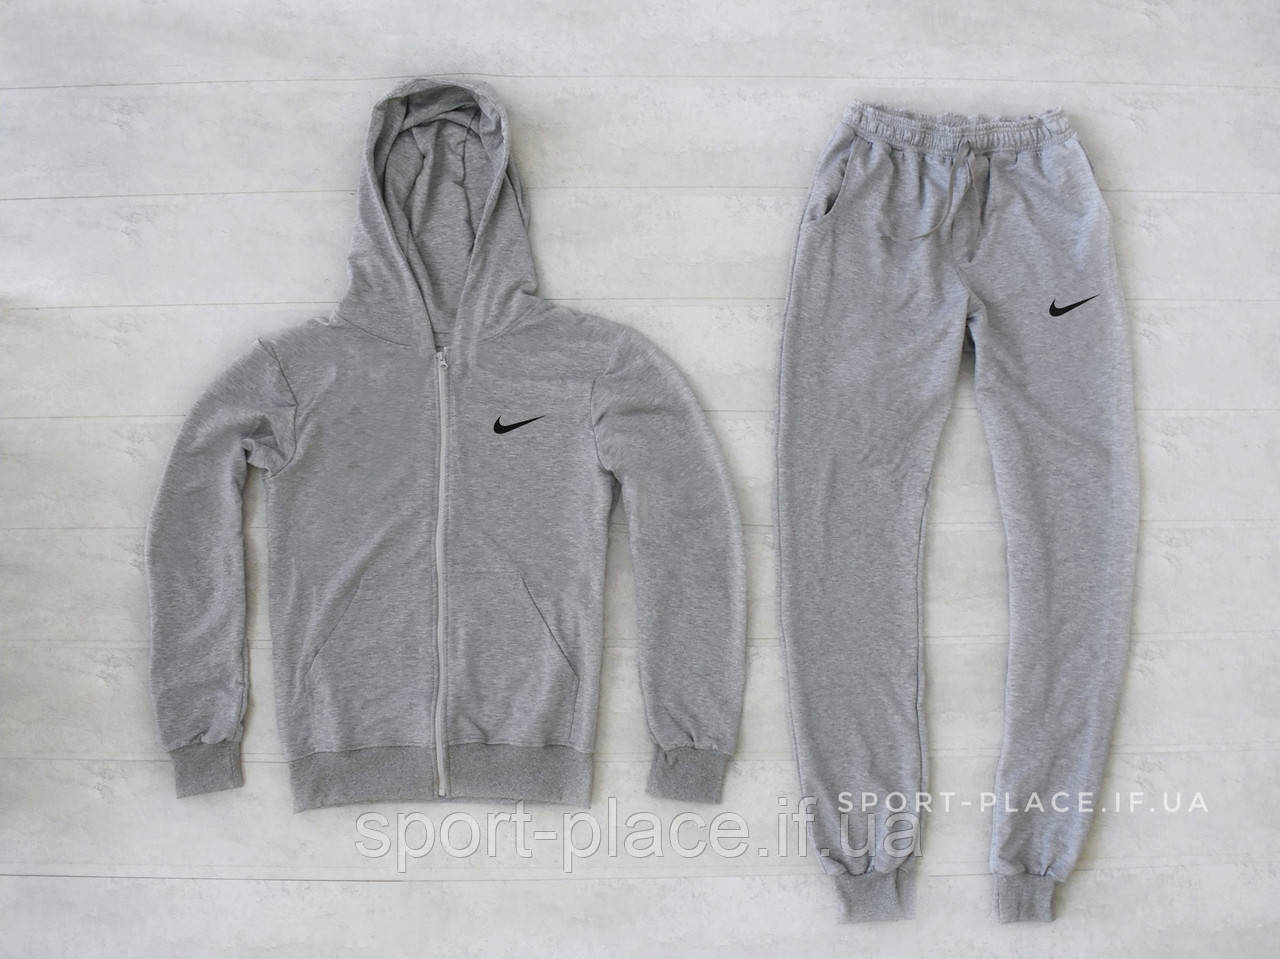 Чоловічий спортивний костюм Nike (Найк) світло сірий, толстовка з замком , штани, олімпійка (кельми)